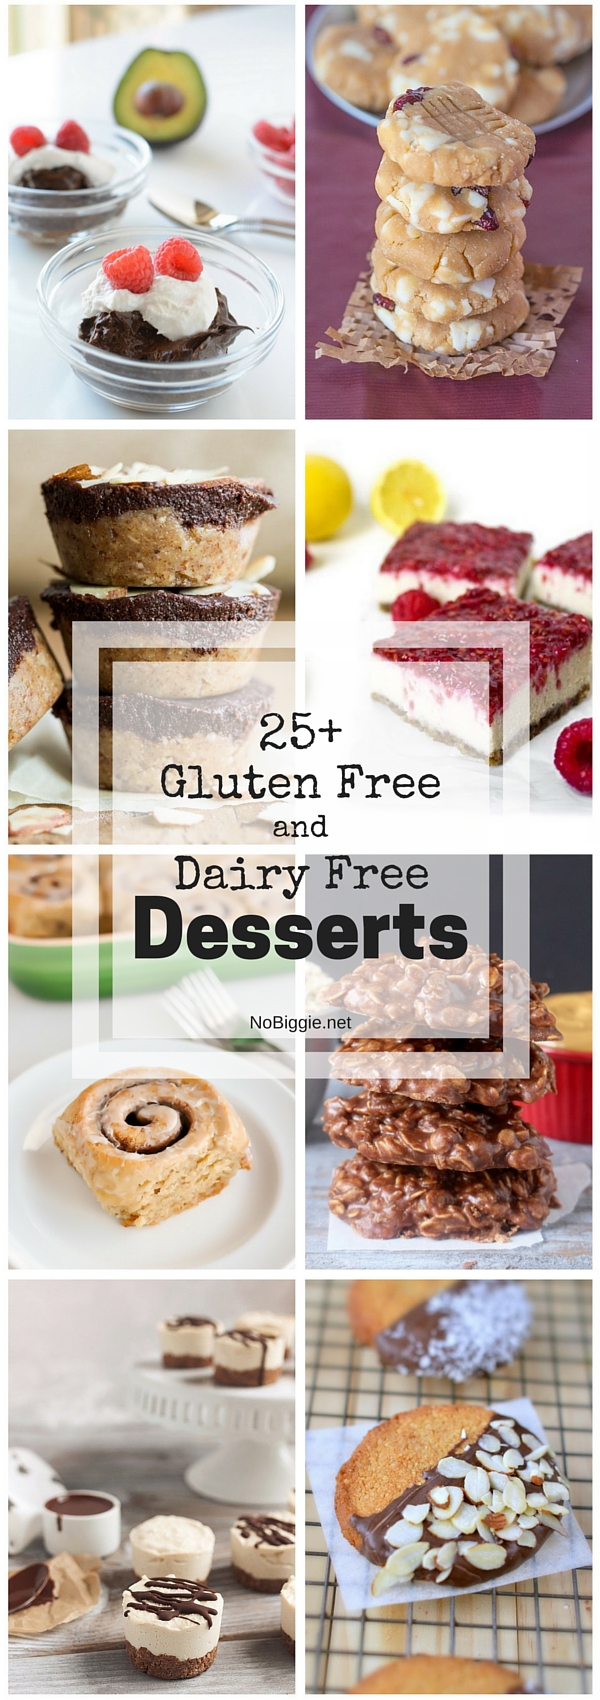 25+ Gluten Free and Dairy Free Desserts | NoBiggie.net